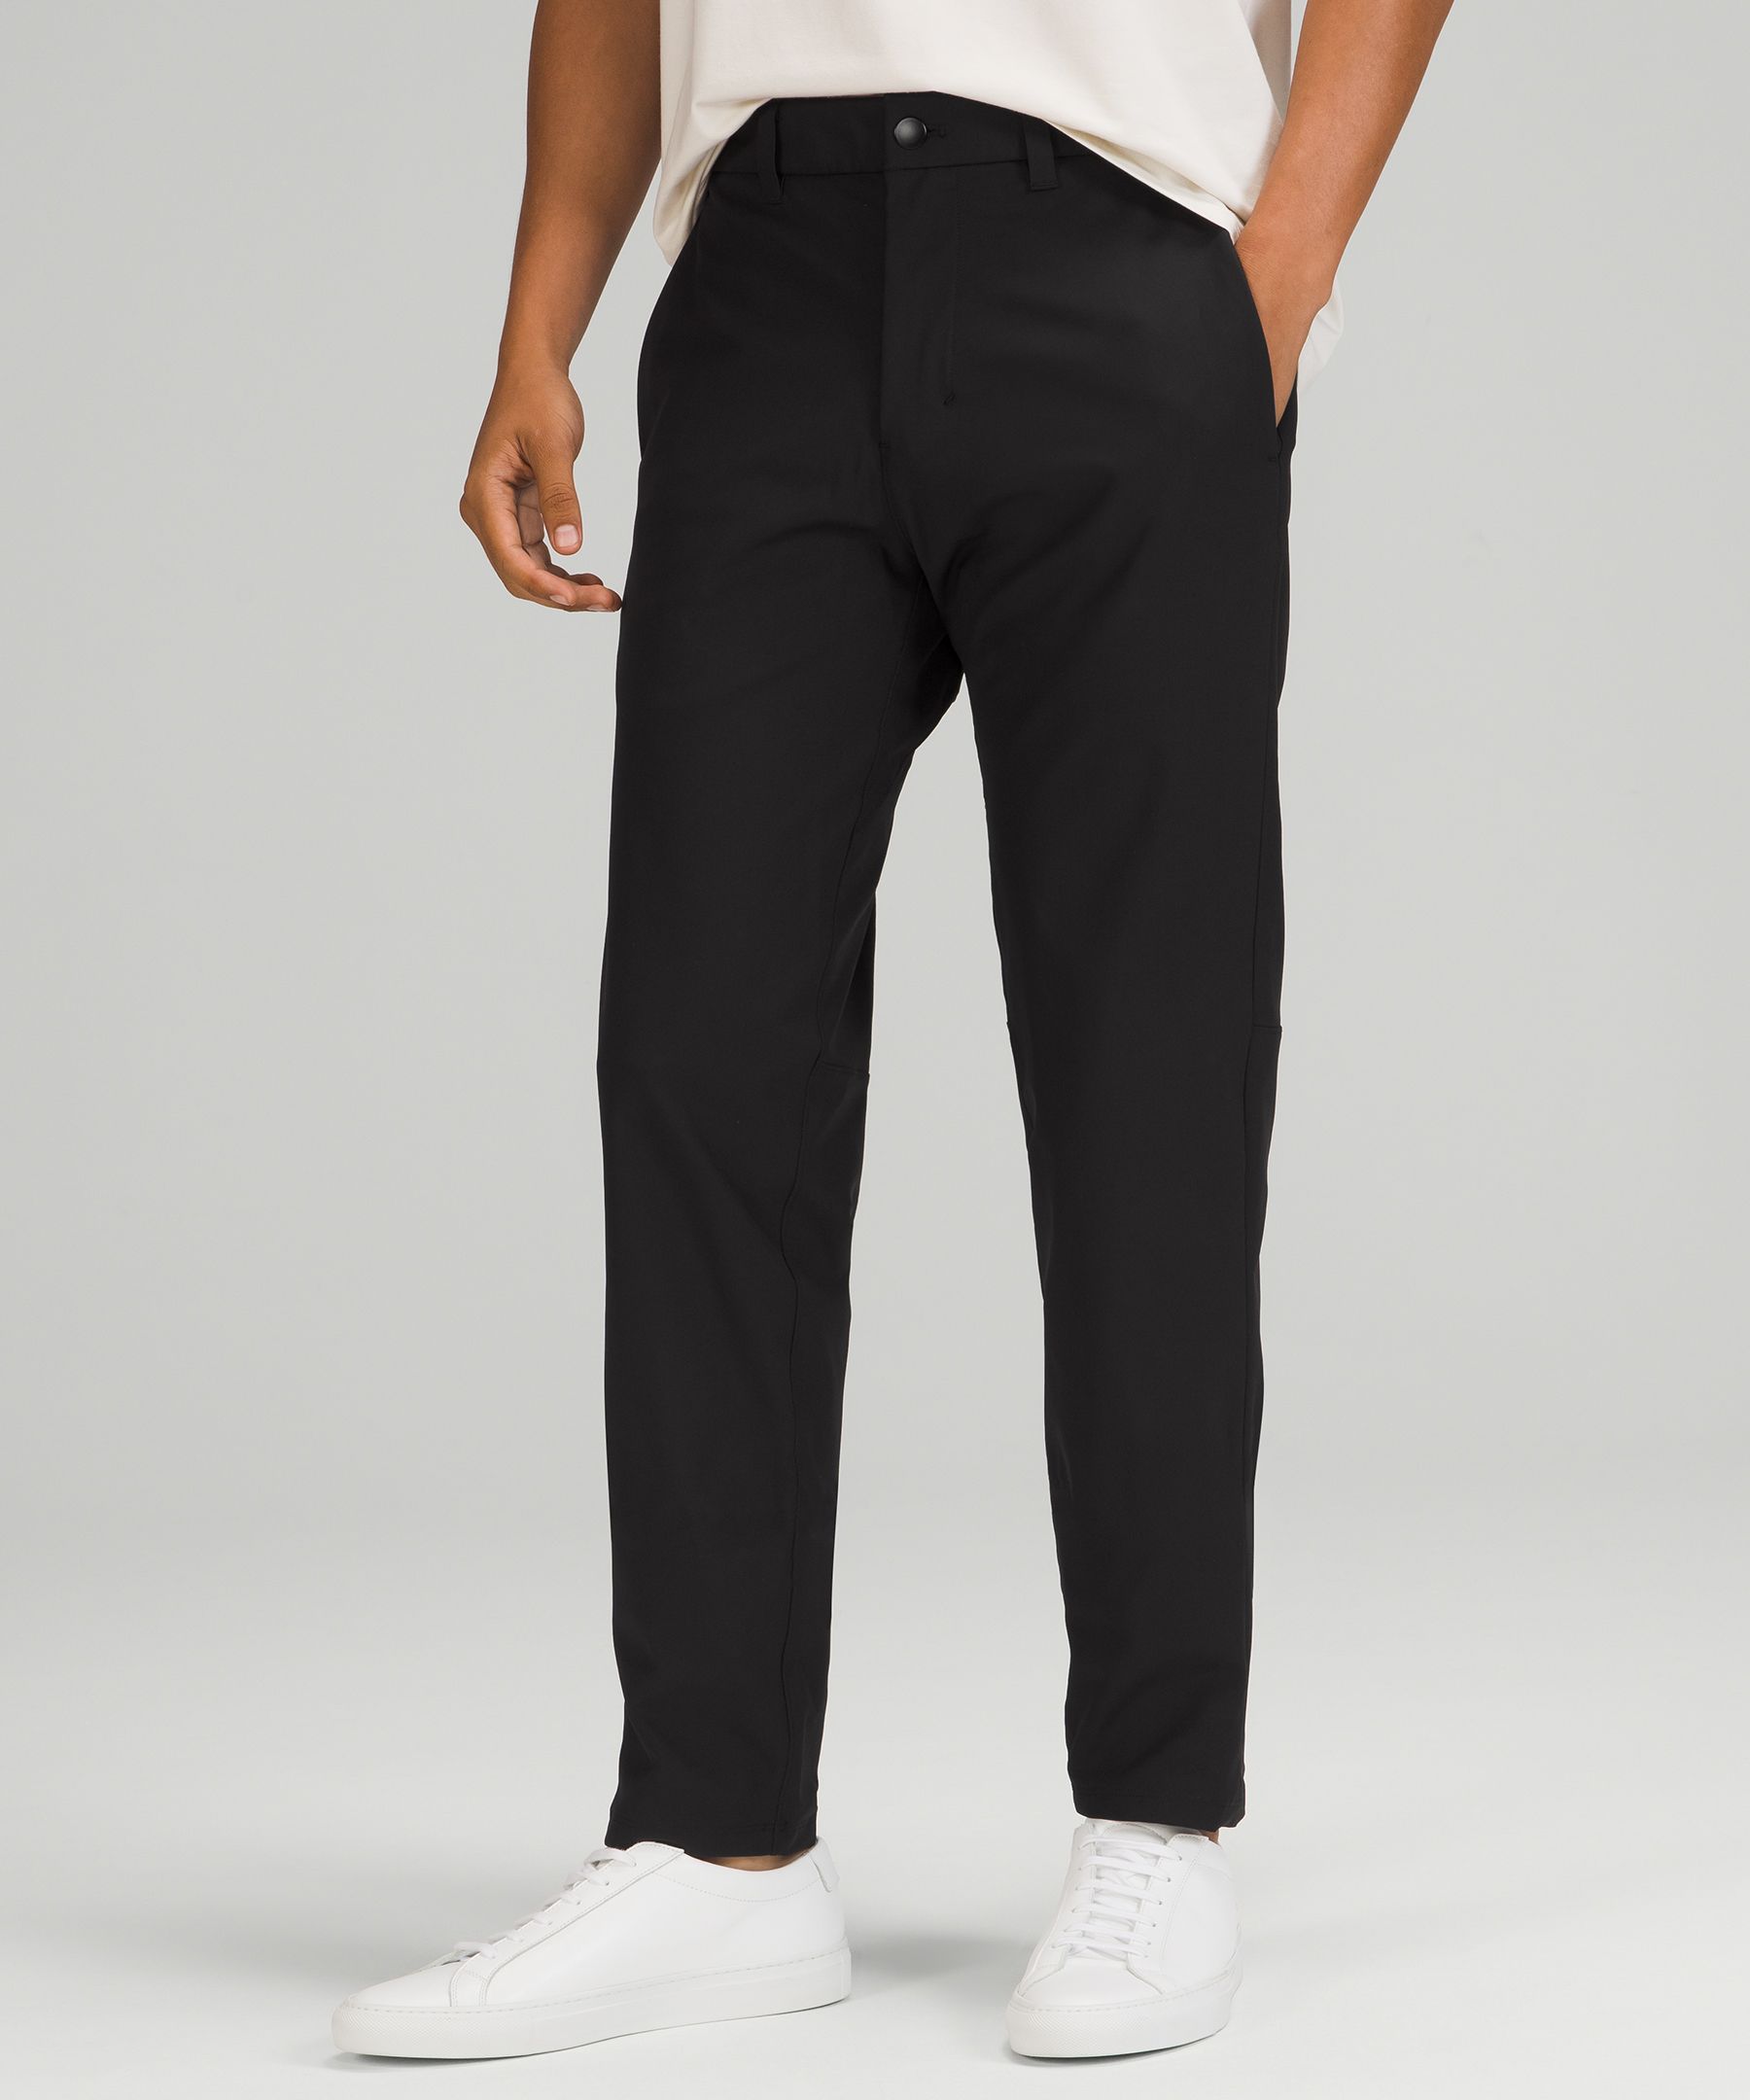 Lululemon Commission Slim-fit Pants 34" Warpstreme In Black